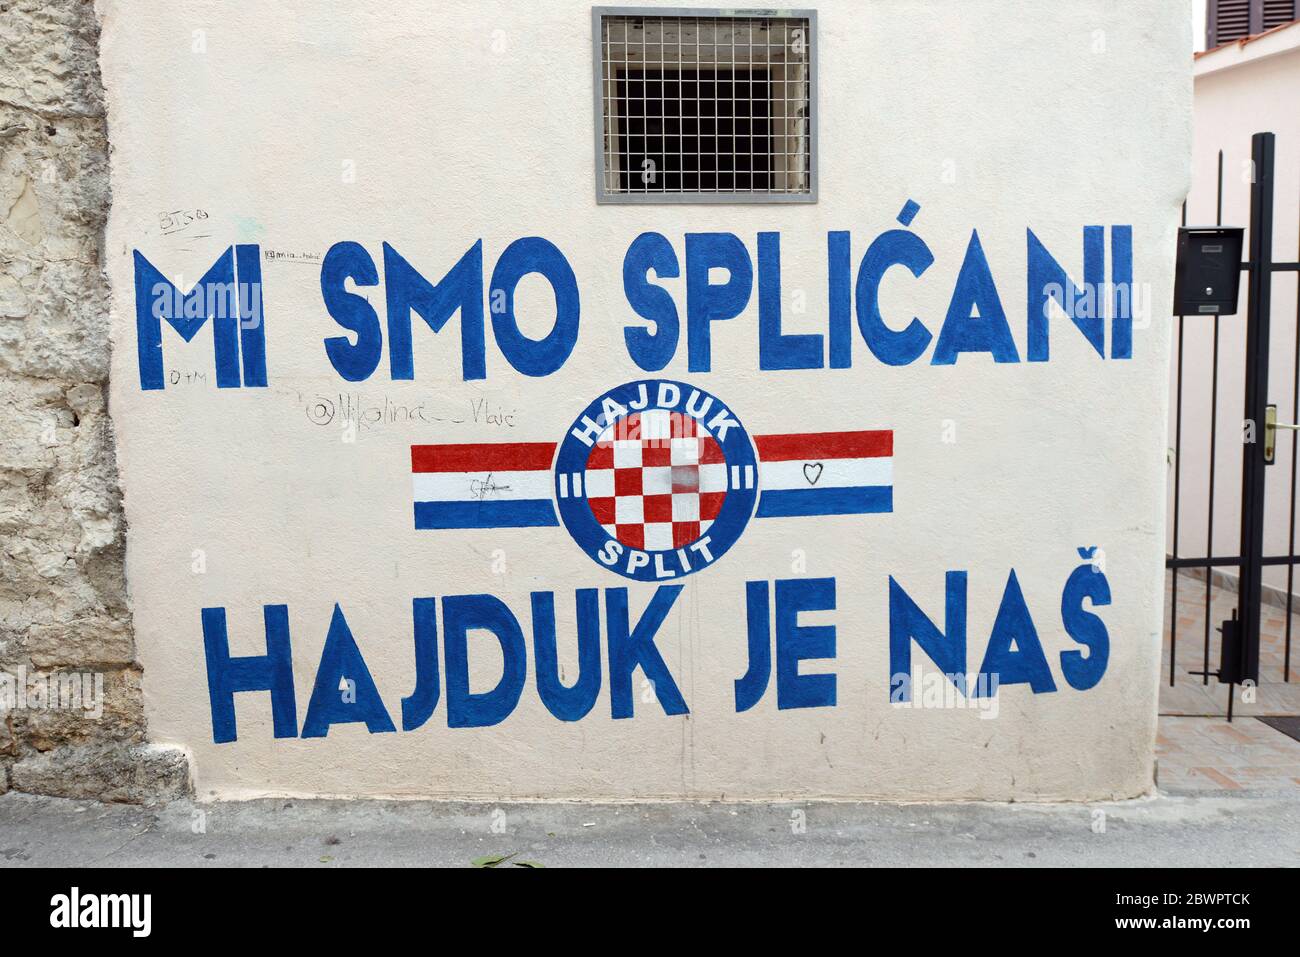 Hajduk Split Established Football T-Shirt (White)